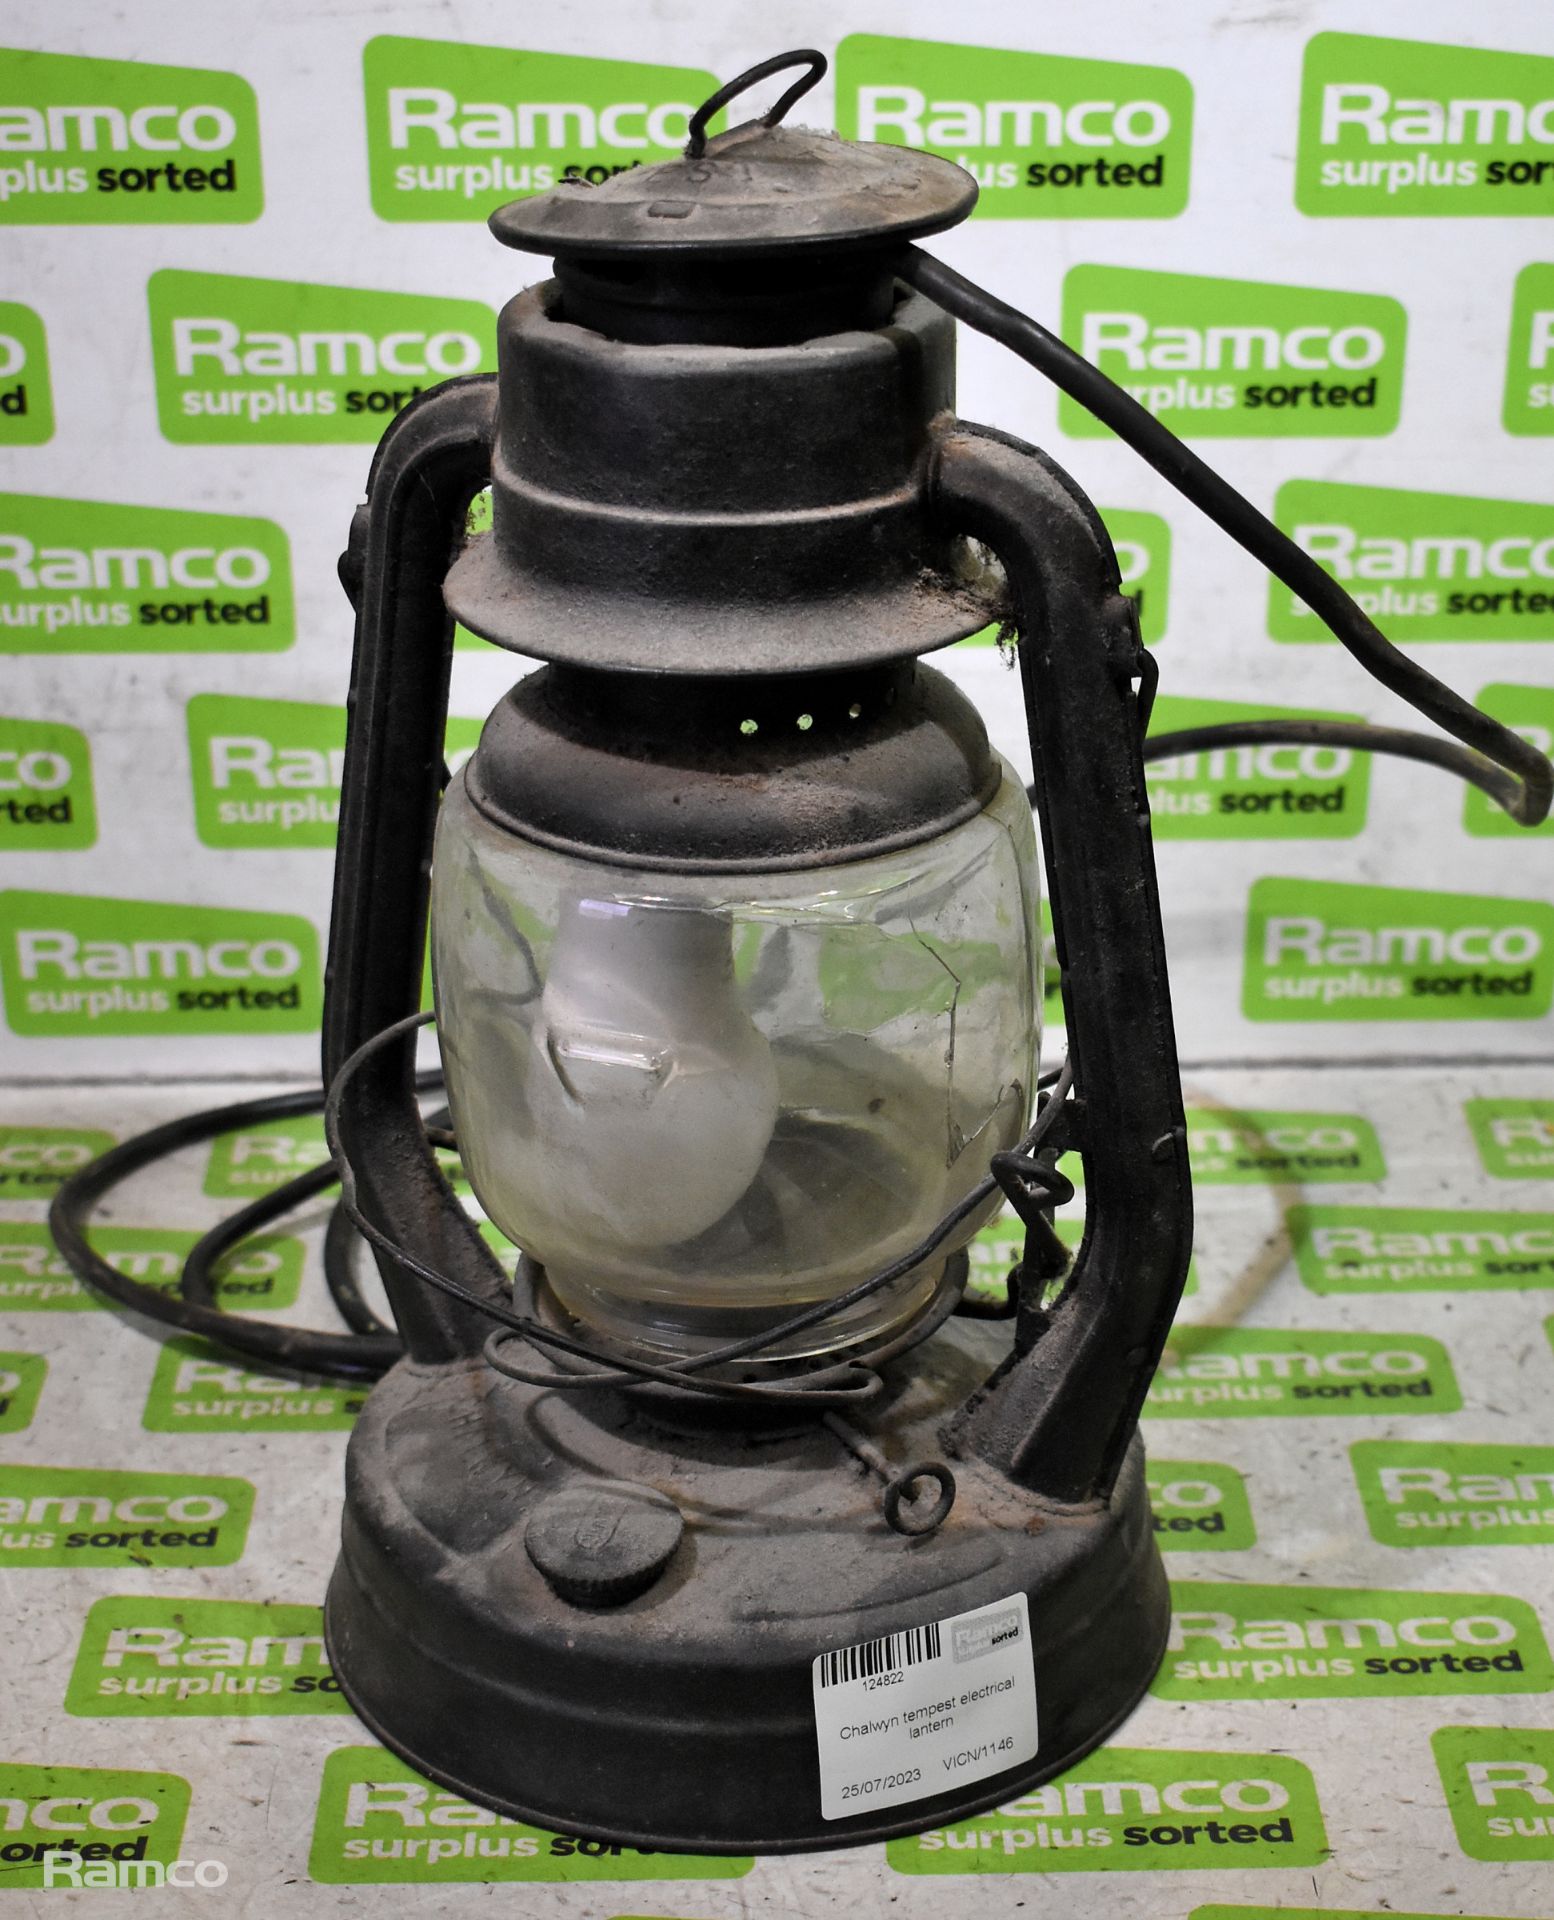 Chalwyn tempest electrical lantern